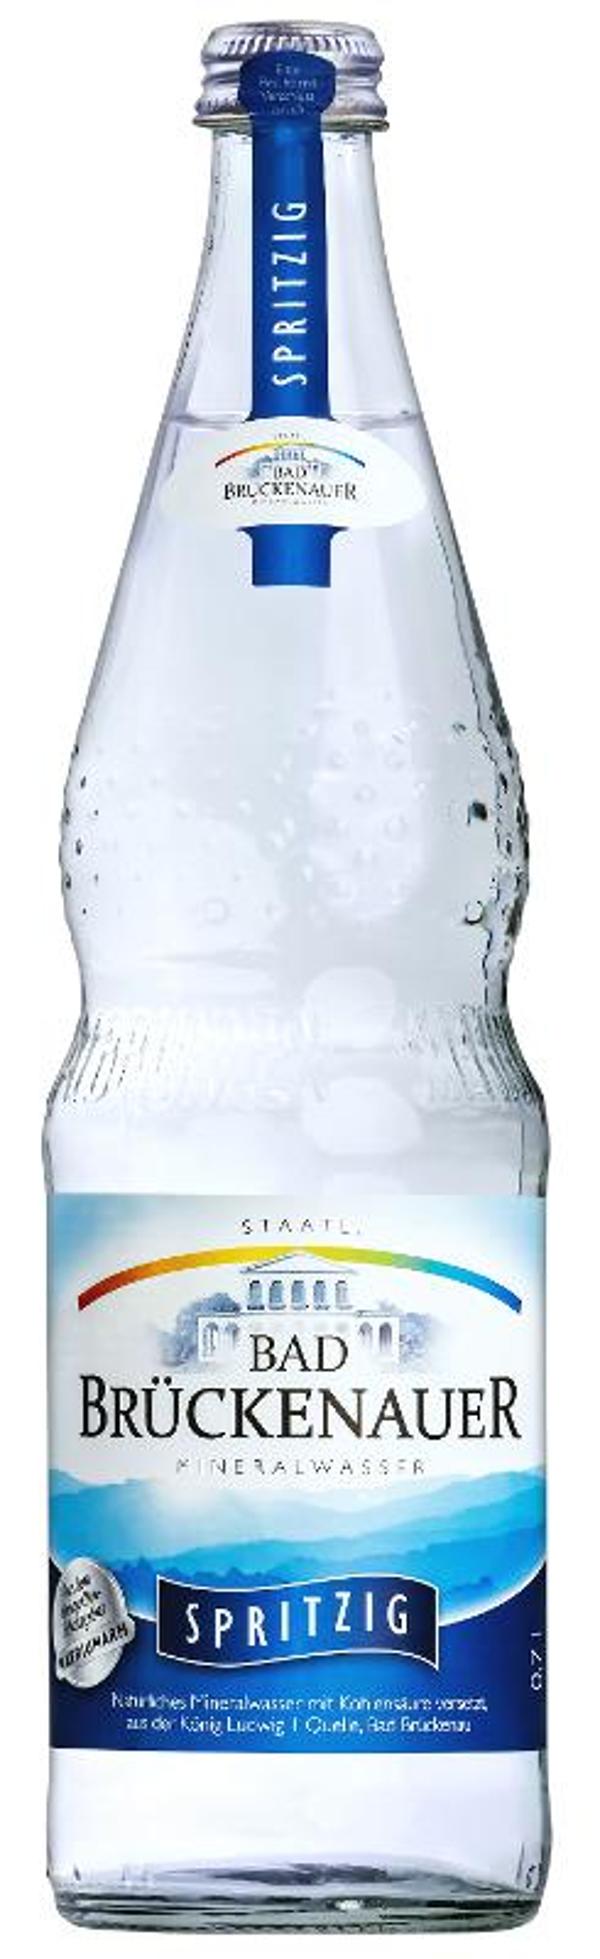 Produktfoto zu Mineralwasser spritzig 0,7l Bad Brückenauer